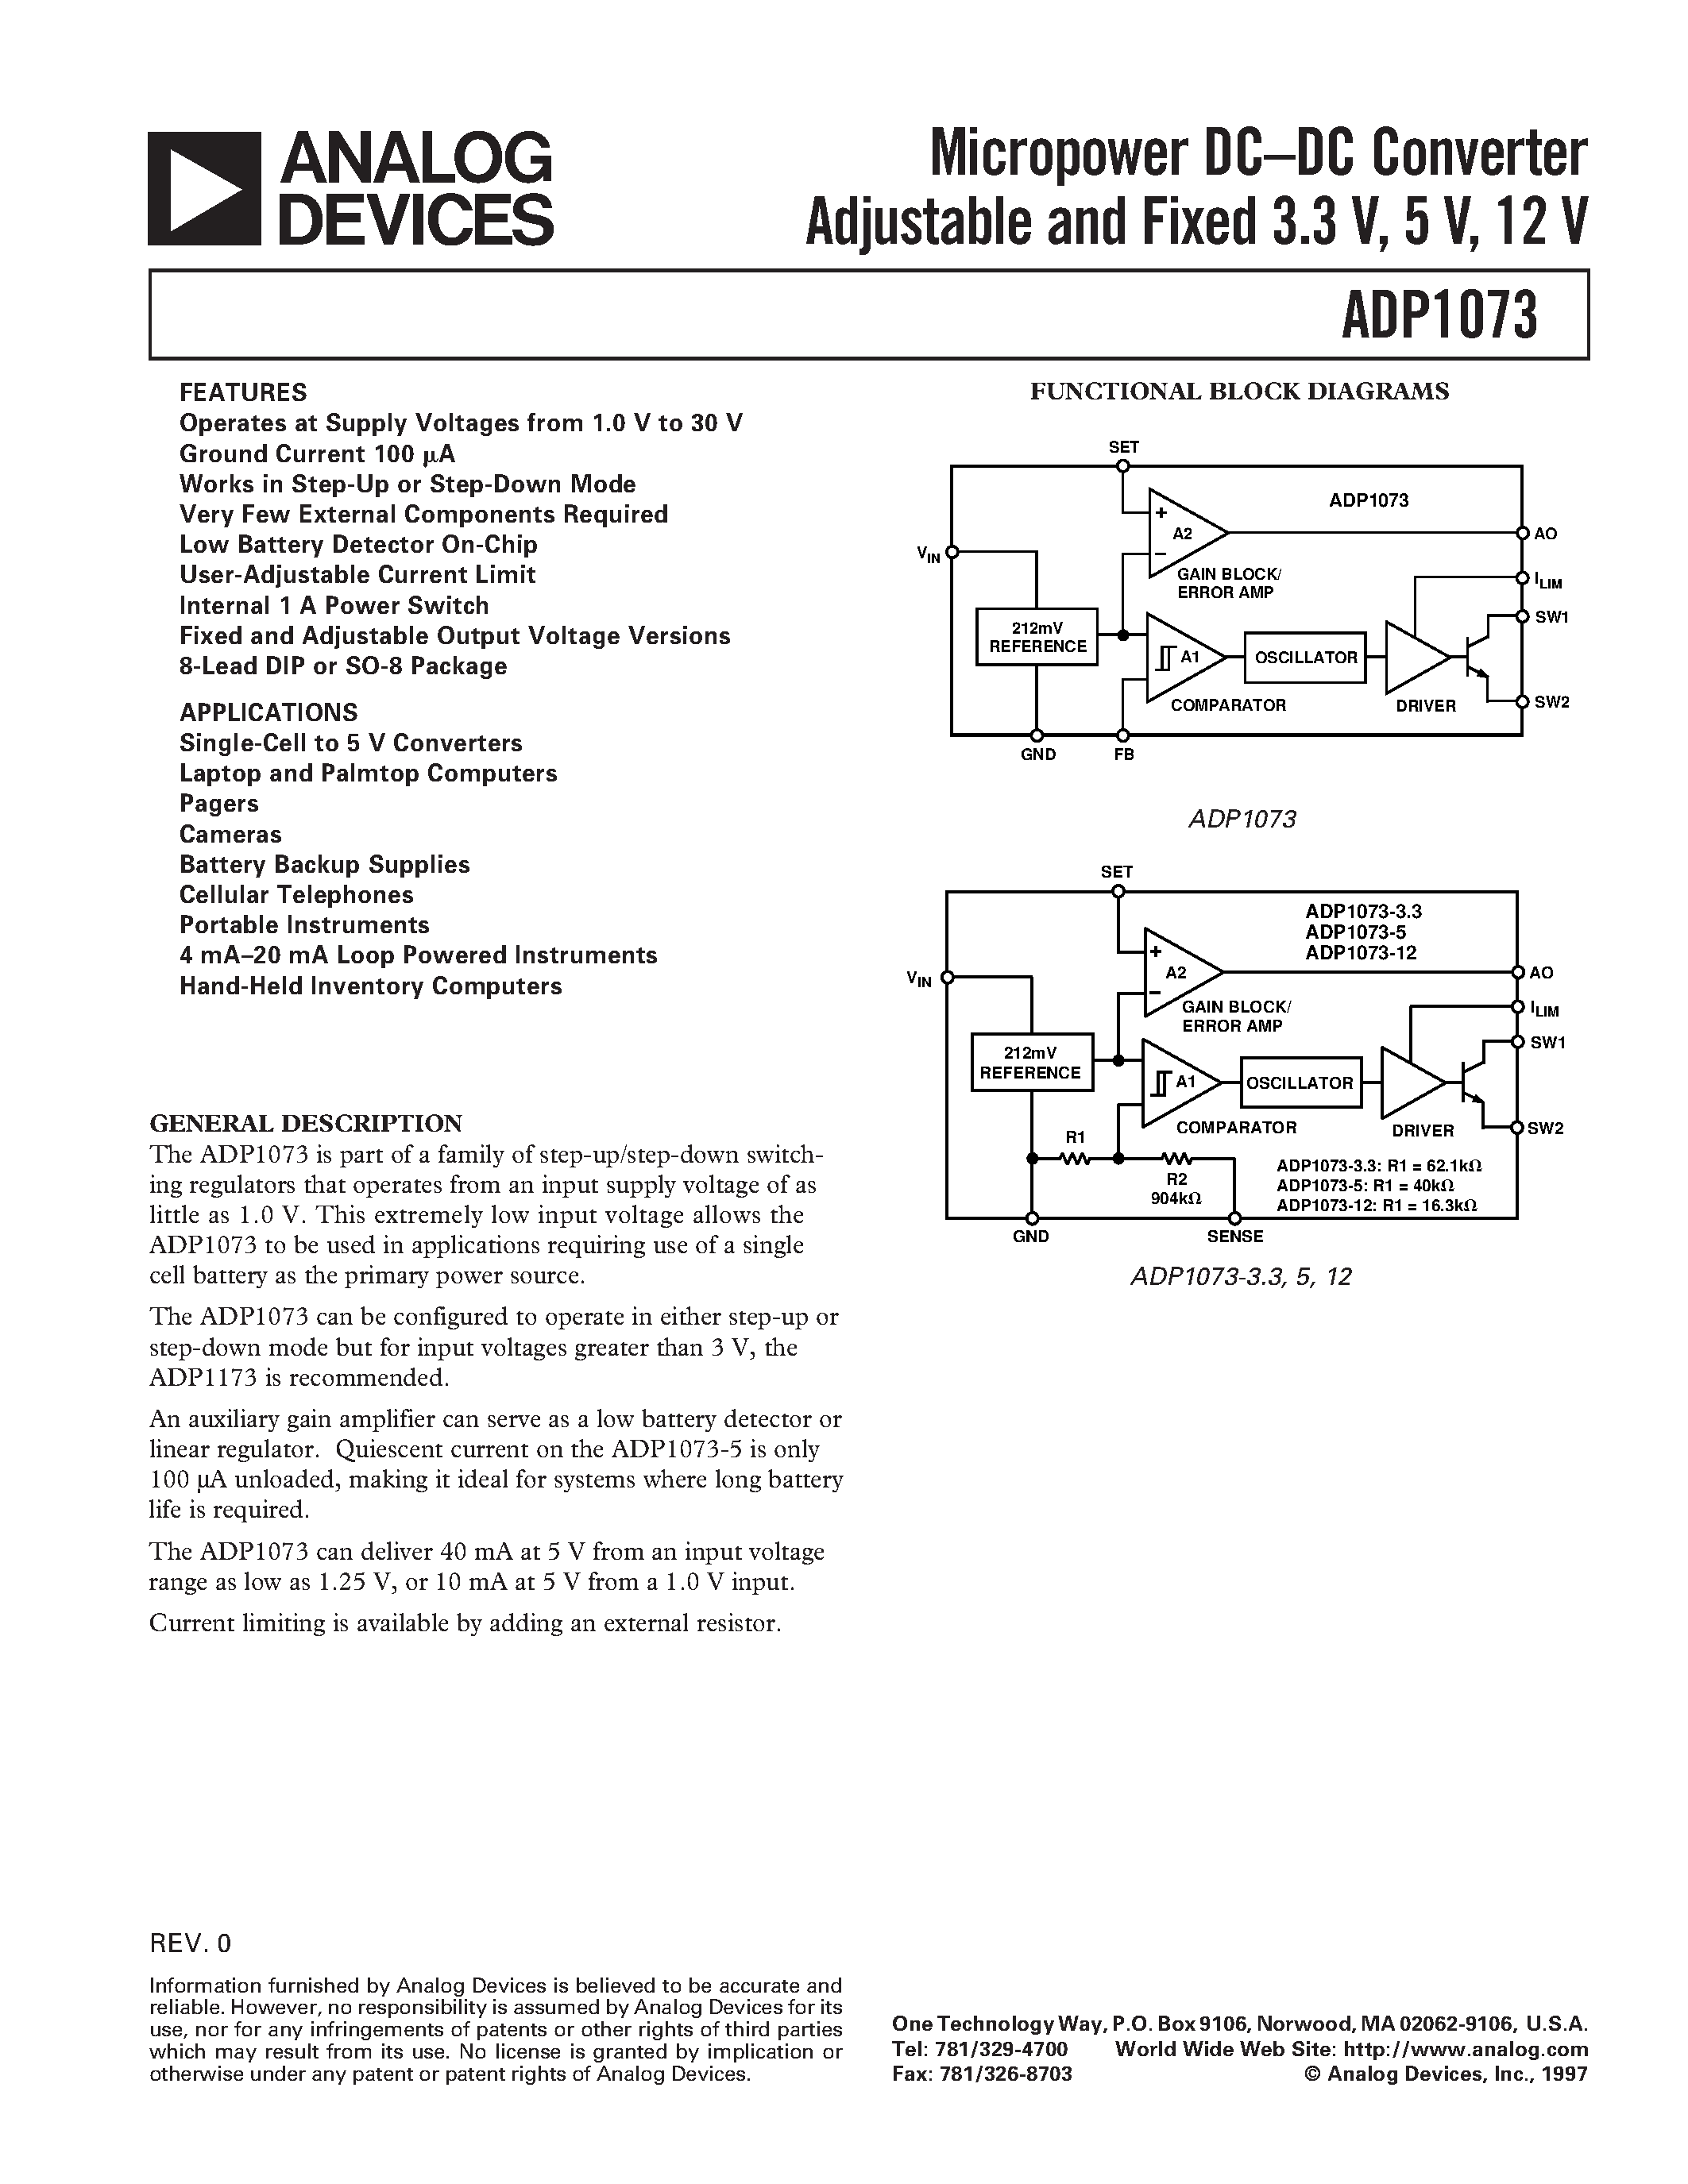 Даташит ADP1073 - Micropower DC.DC Converter Adjustable and Fixed 3.3 V/ 5 V/ 12 V страница 1